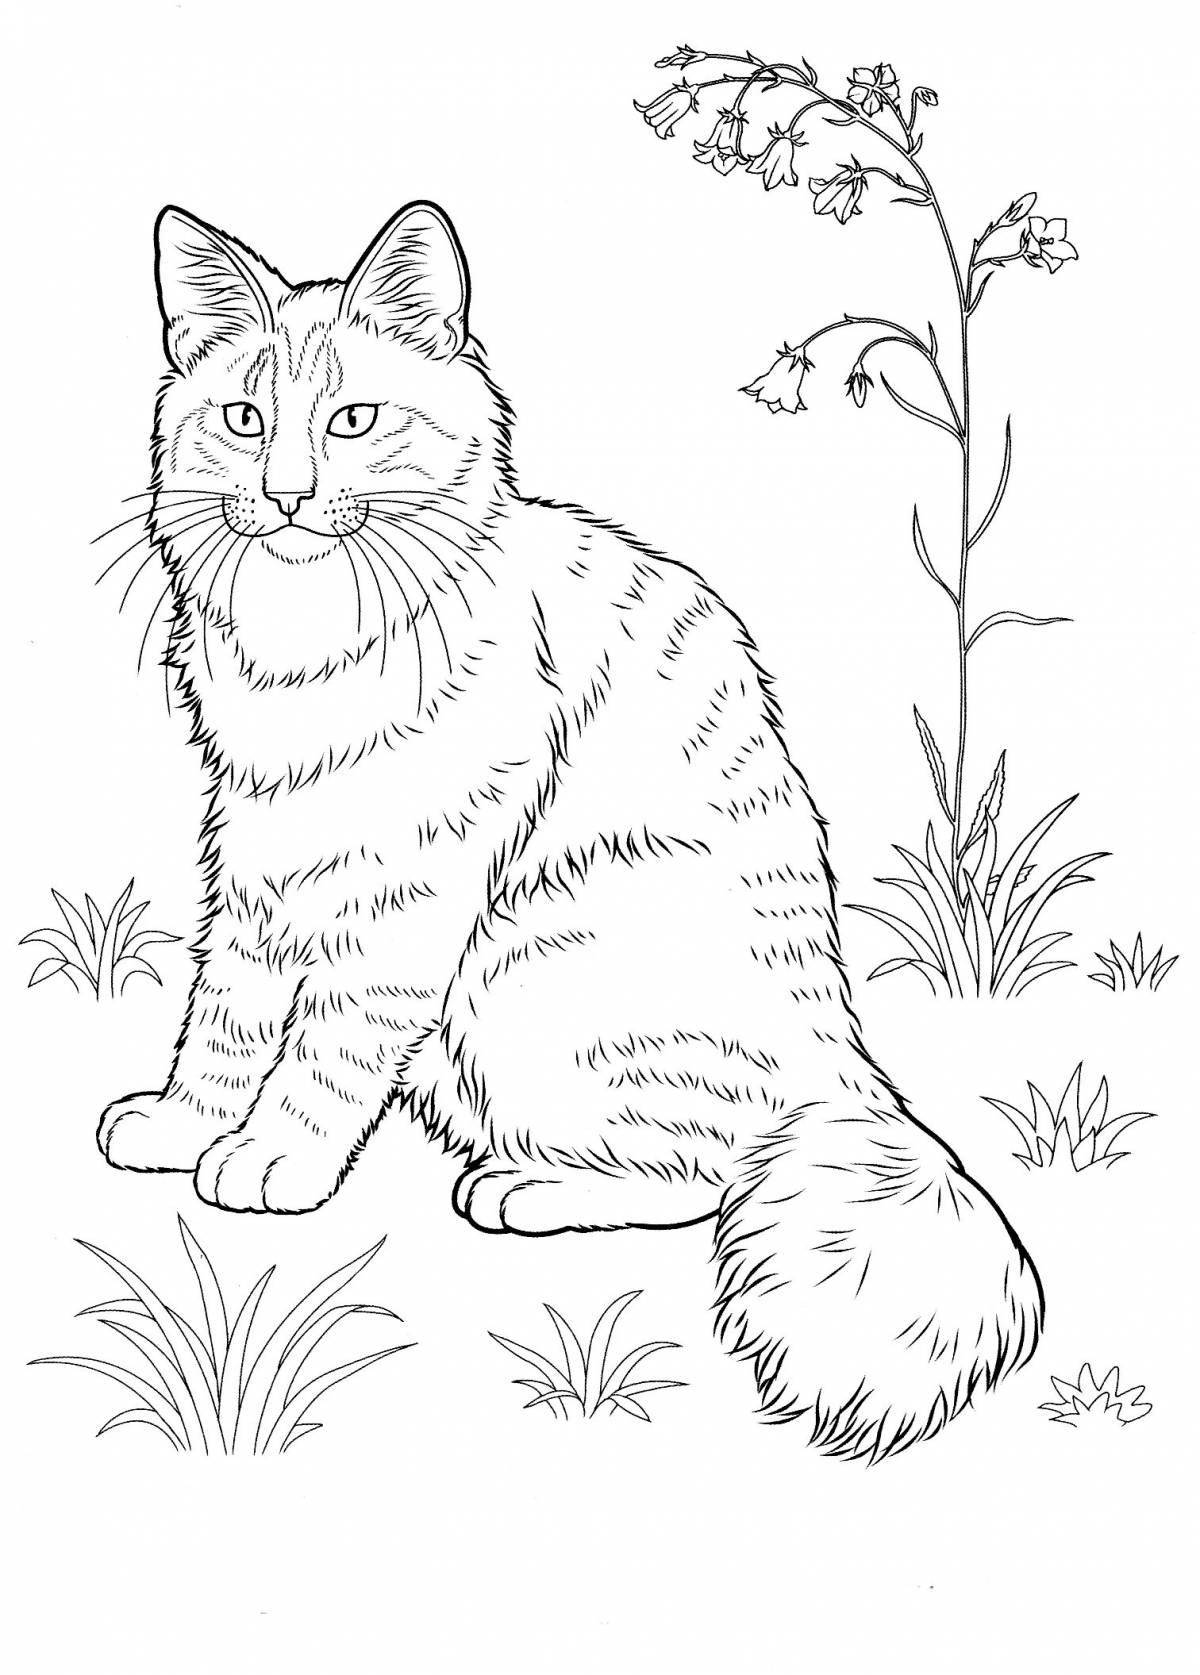 Анимированная раскраска рисунок кота